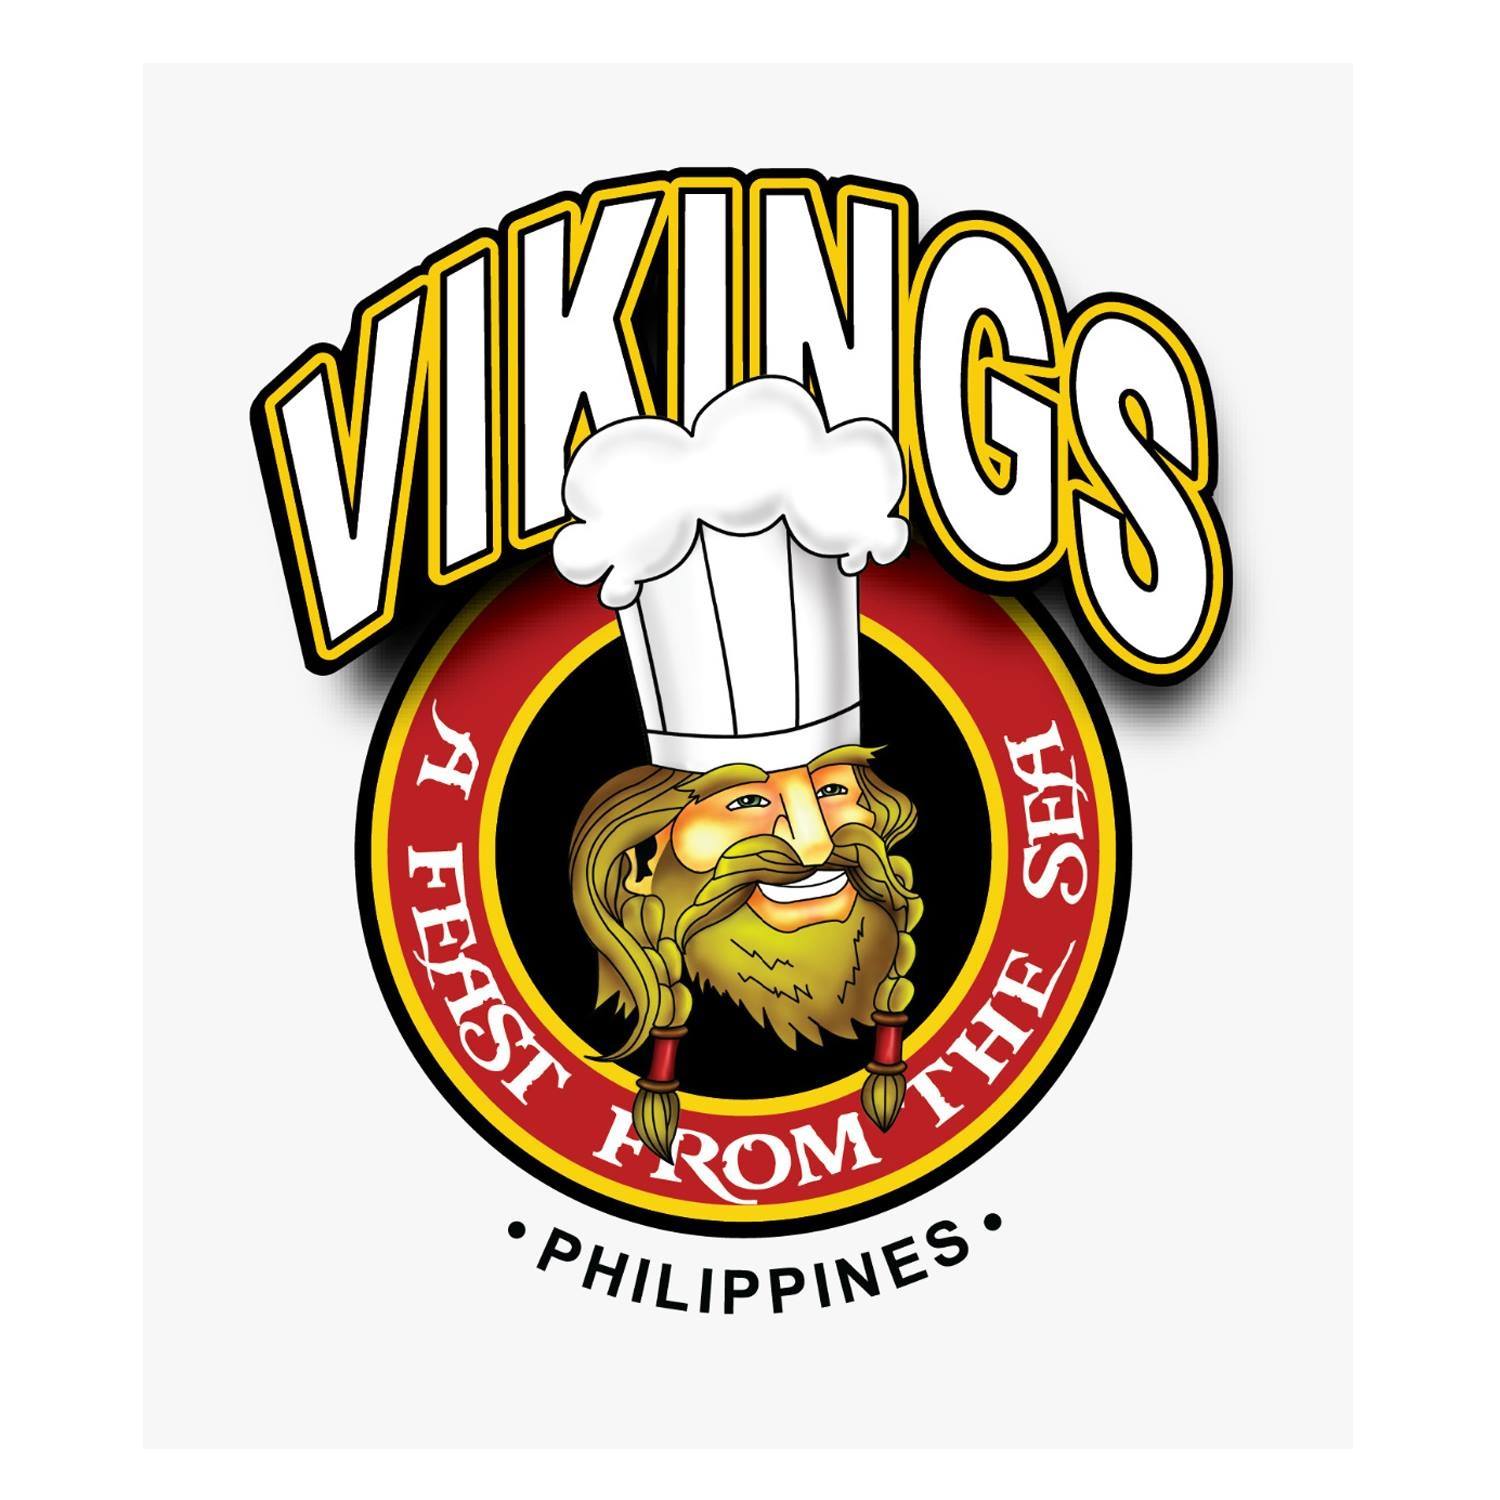 Vikings Group